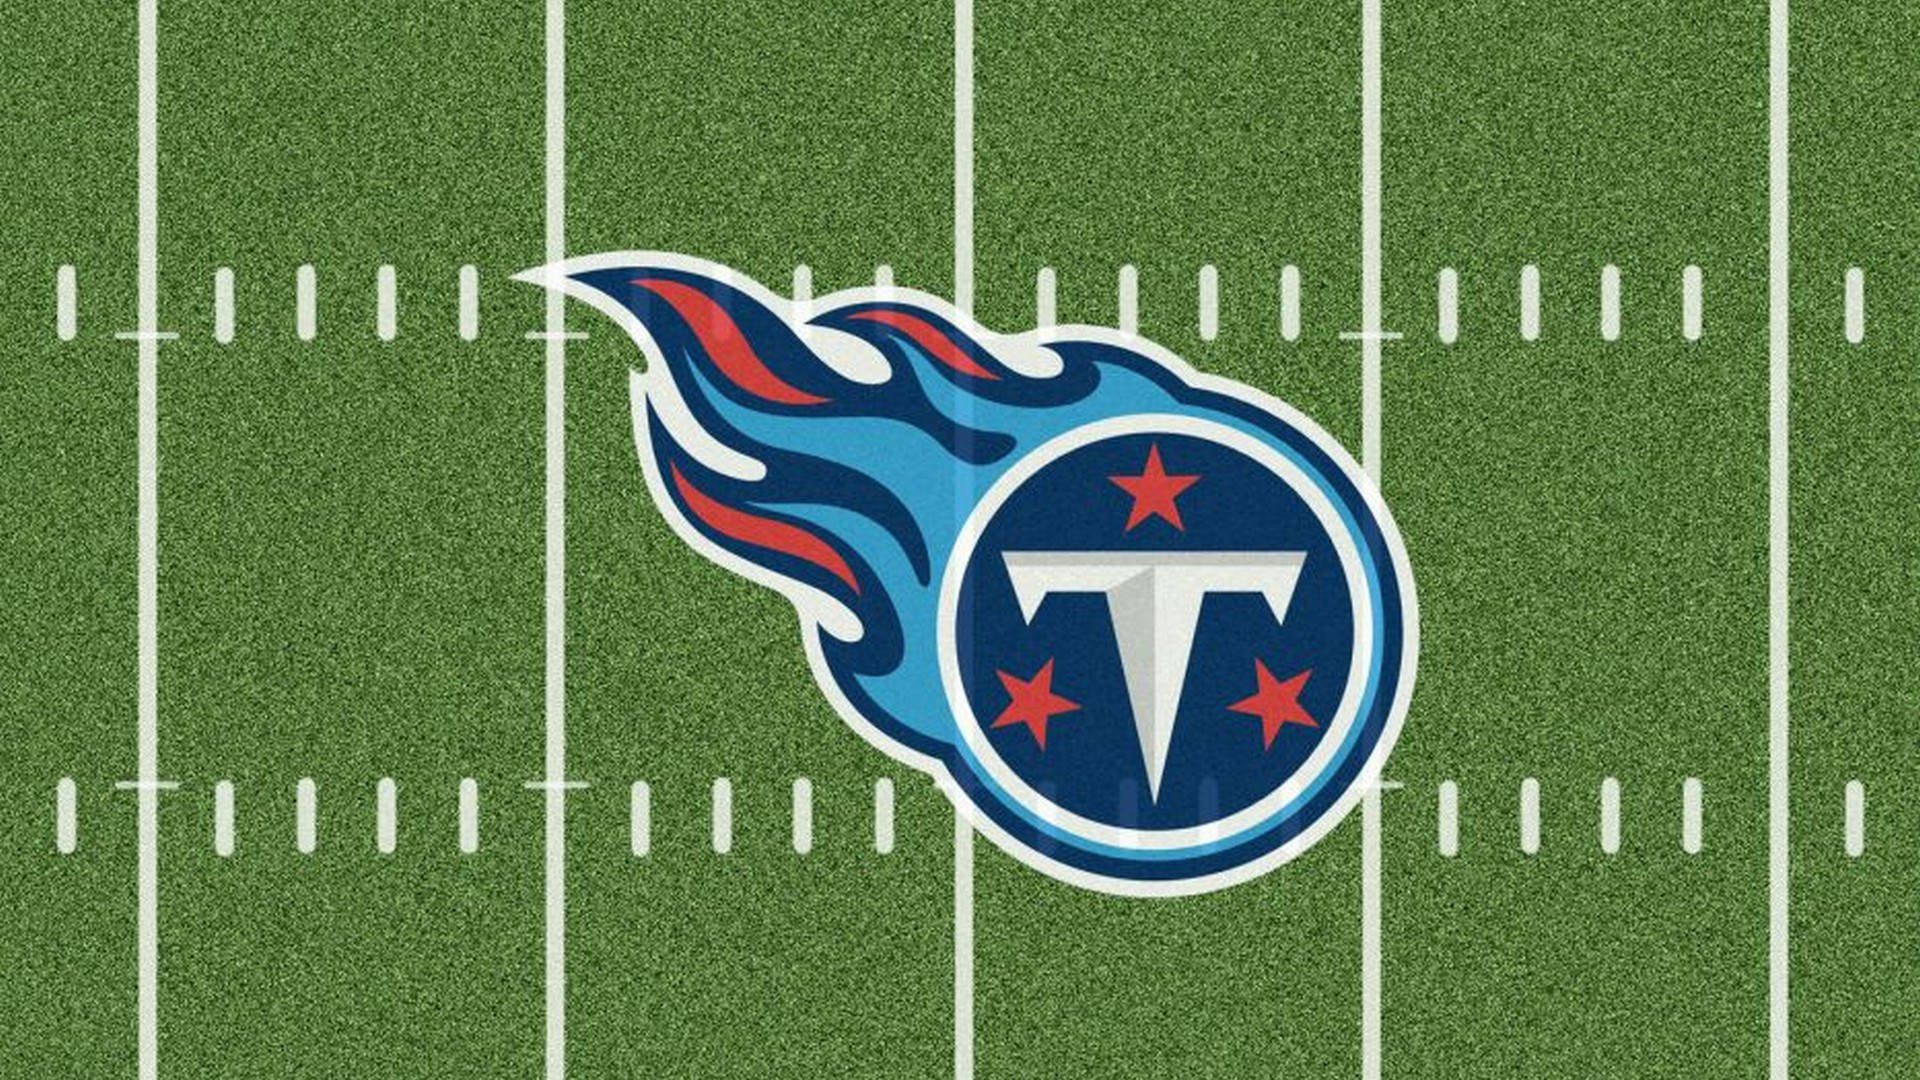 1920x1080 Download Tennessee Titans Football Field Wallpaper